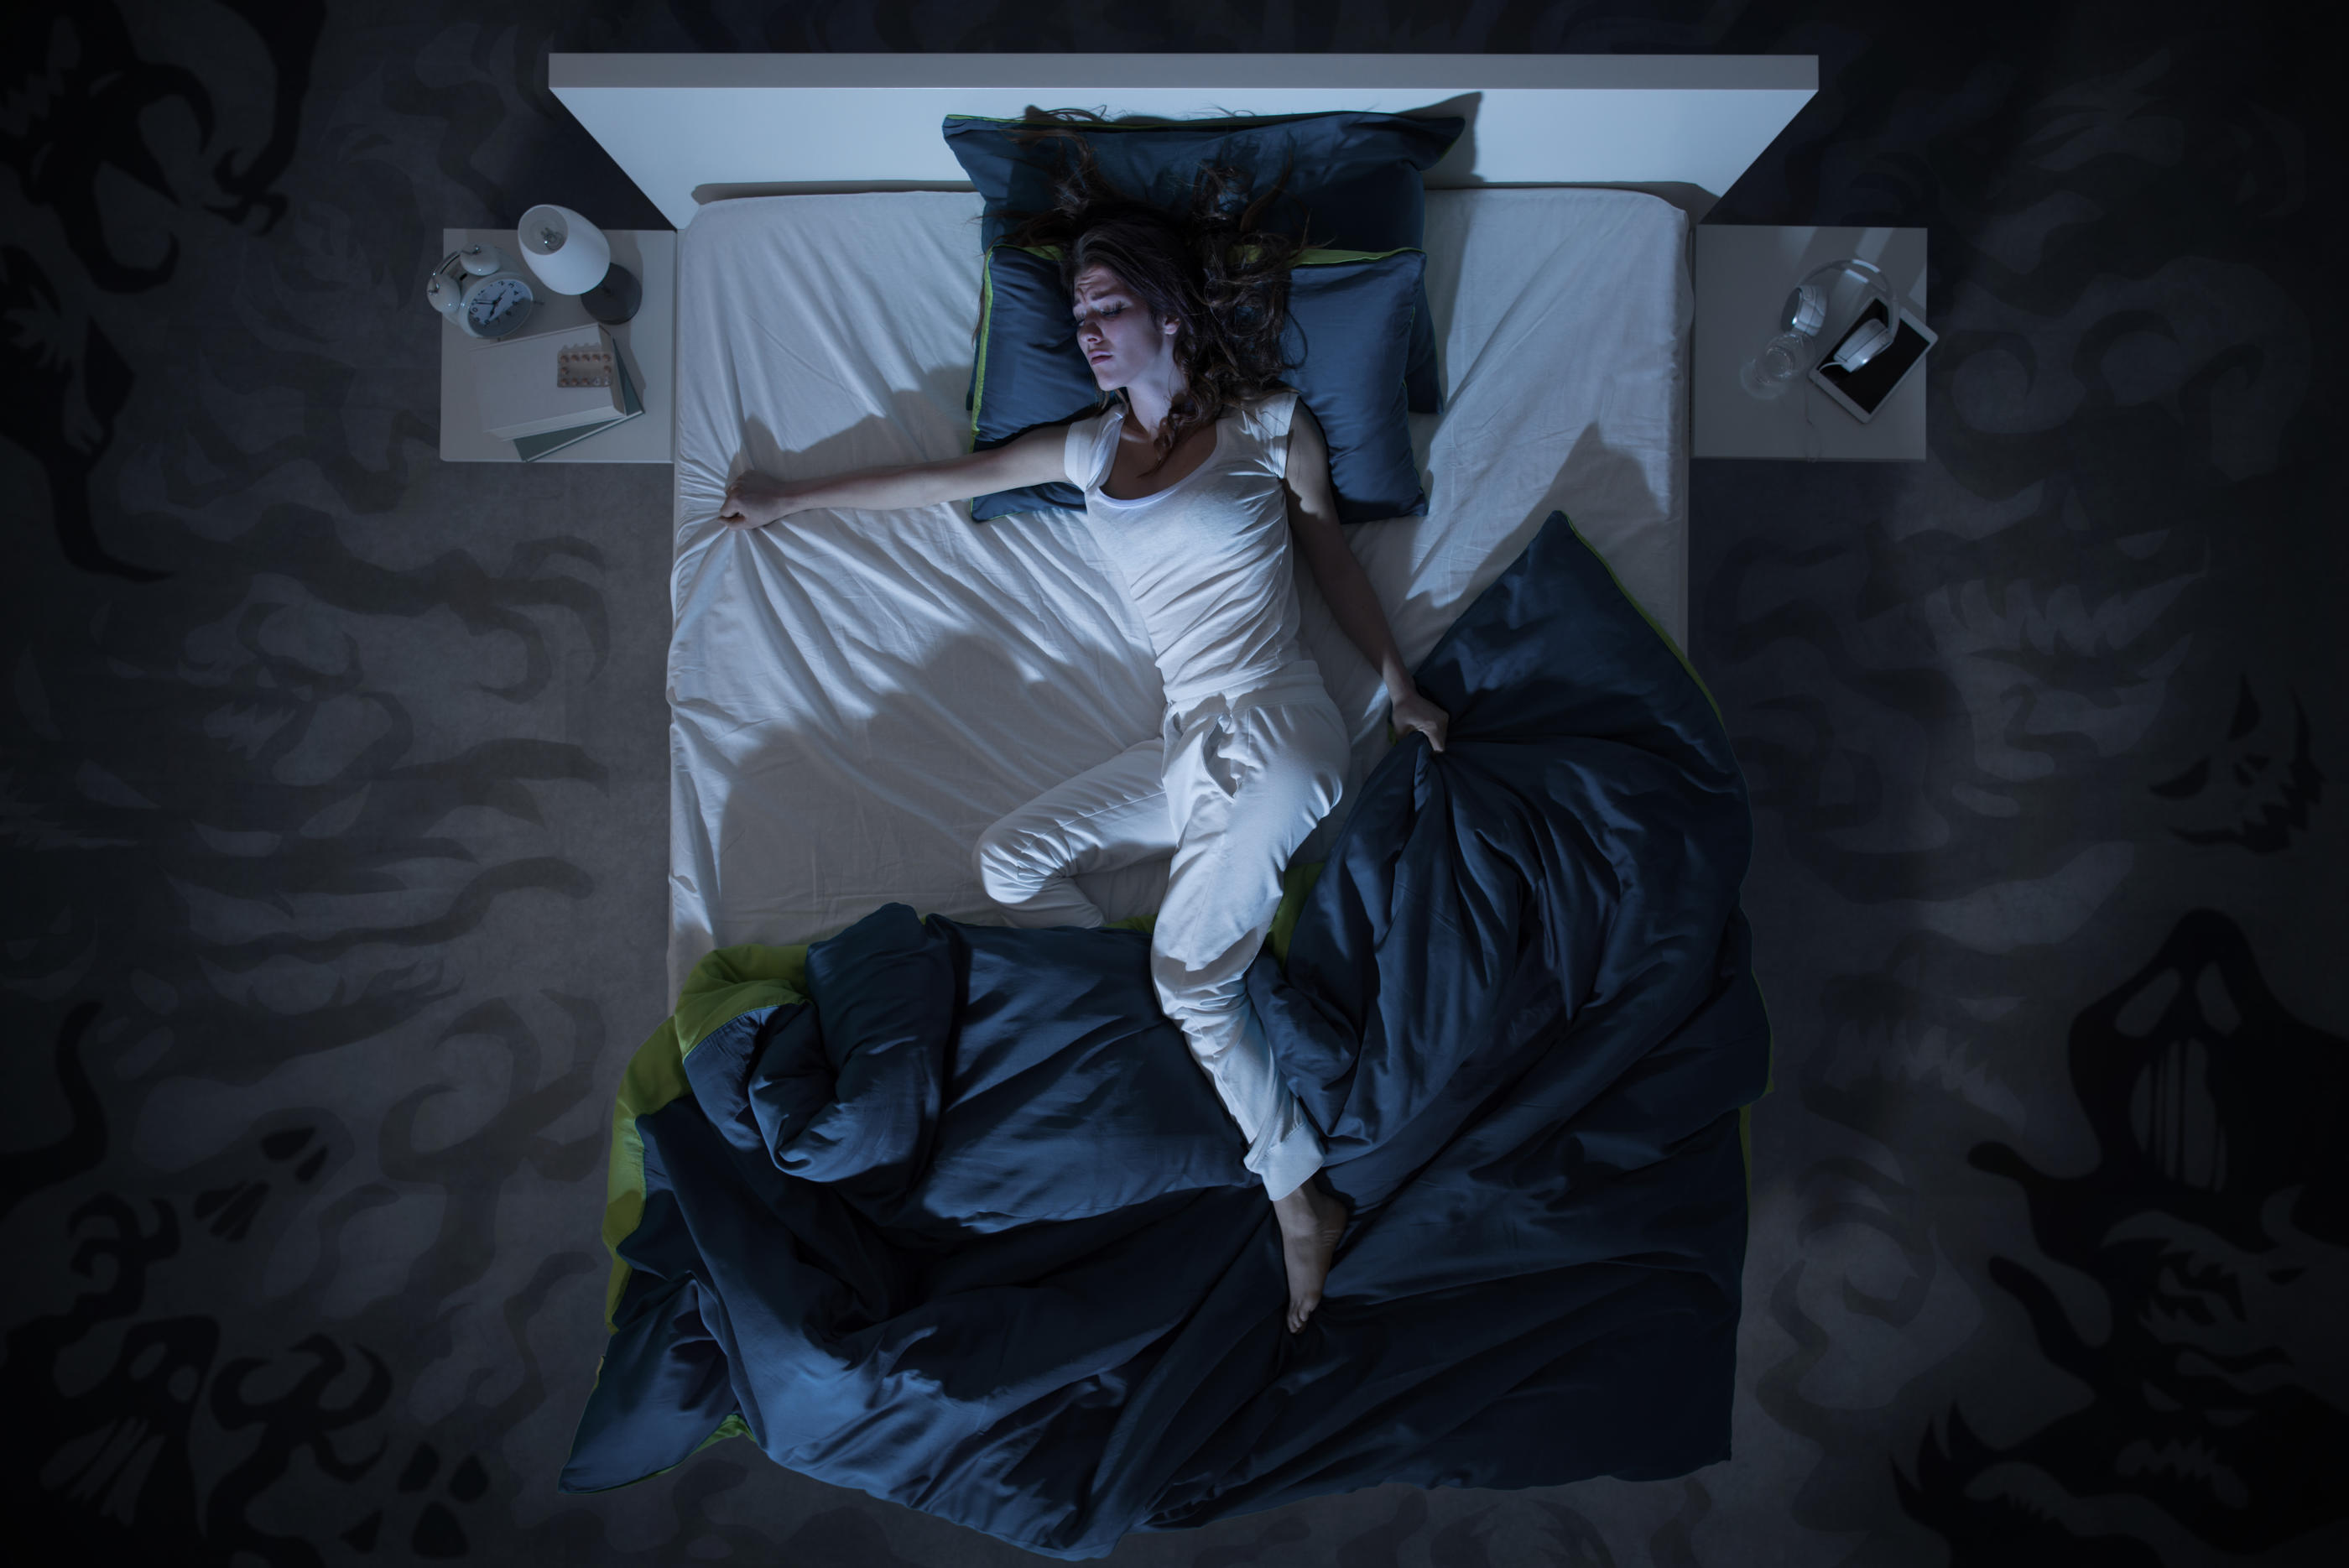 La chaleur gêne l'endormissement (Illustration). Istock/demaerre